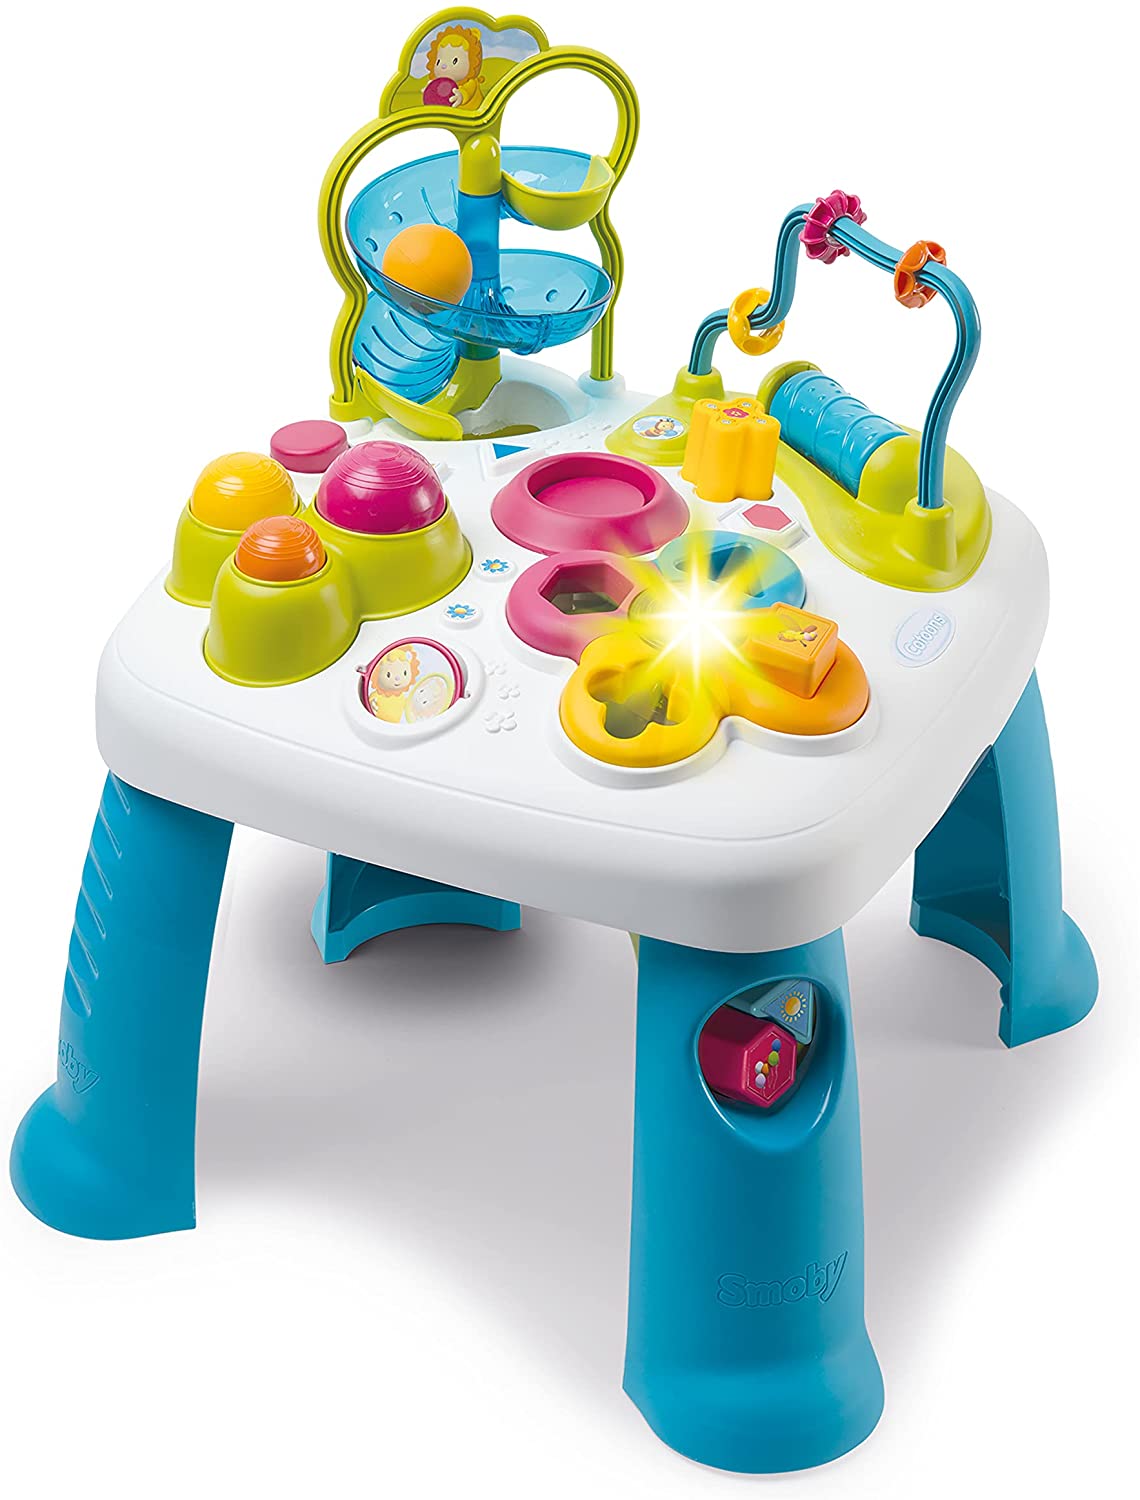 Smoby 110426 Cotoons Activity-Spieltisch, Baby, Motorikspielzeug, Kugelbahn, Steckspiel, für Kinder ab 12 Monaten, Mehrfarbig